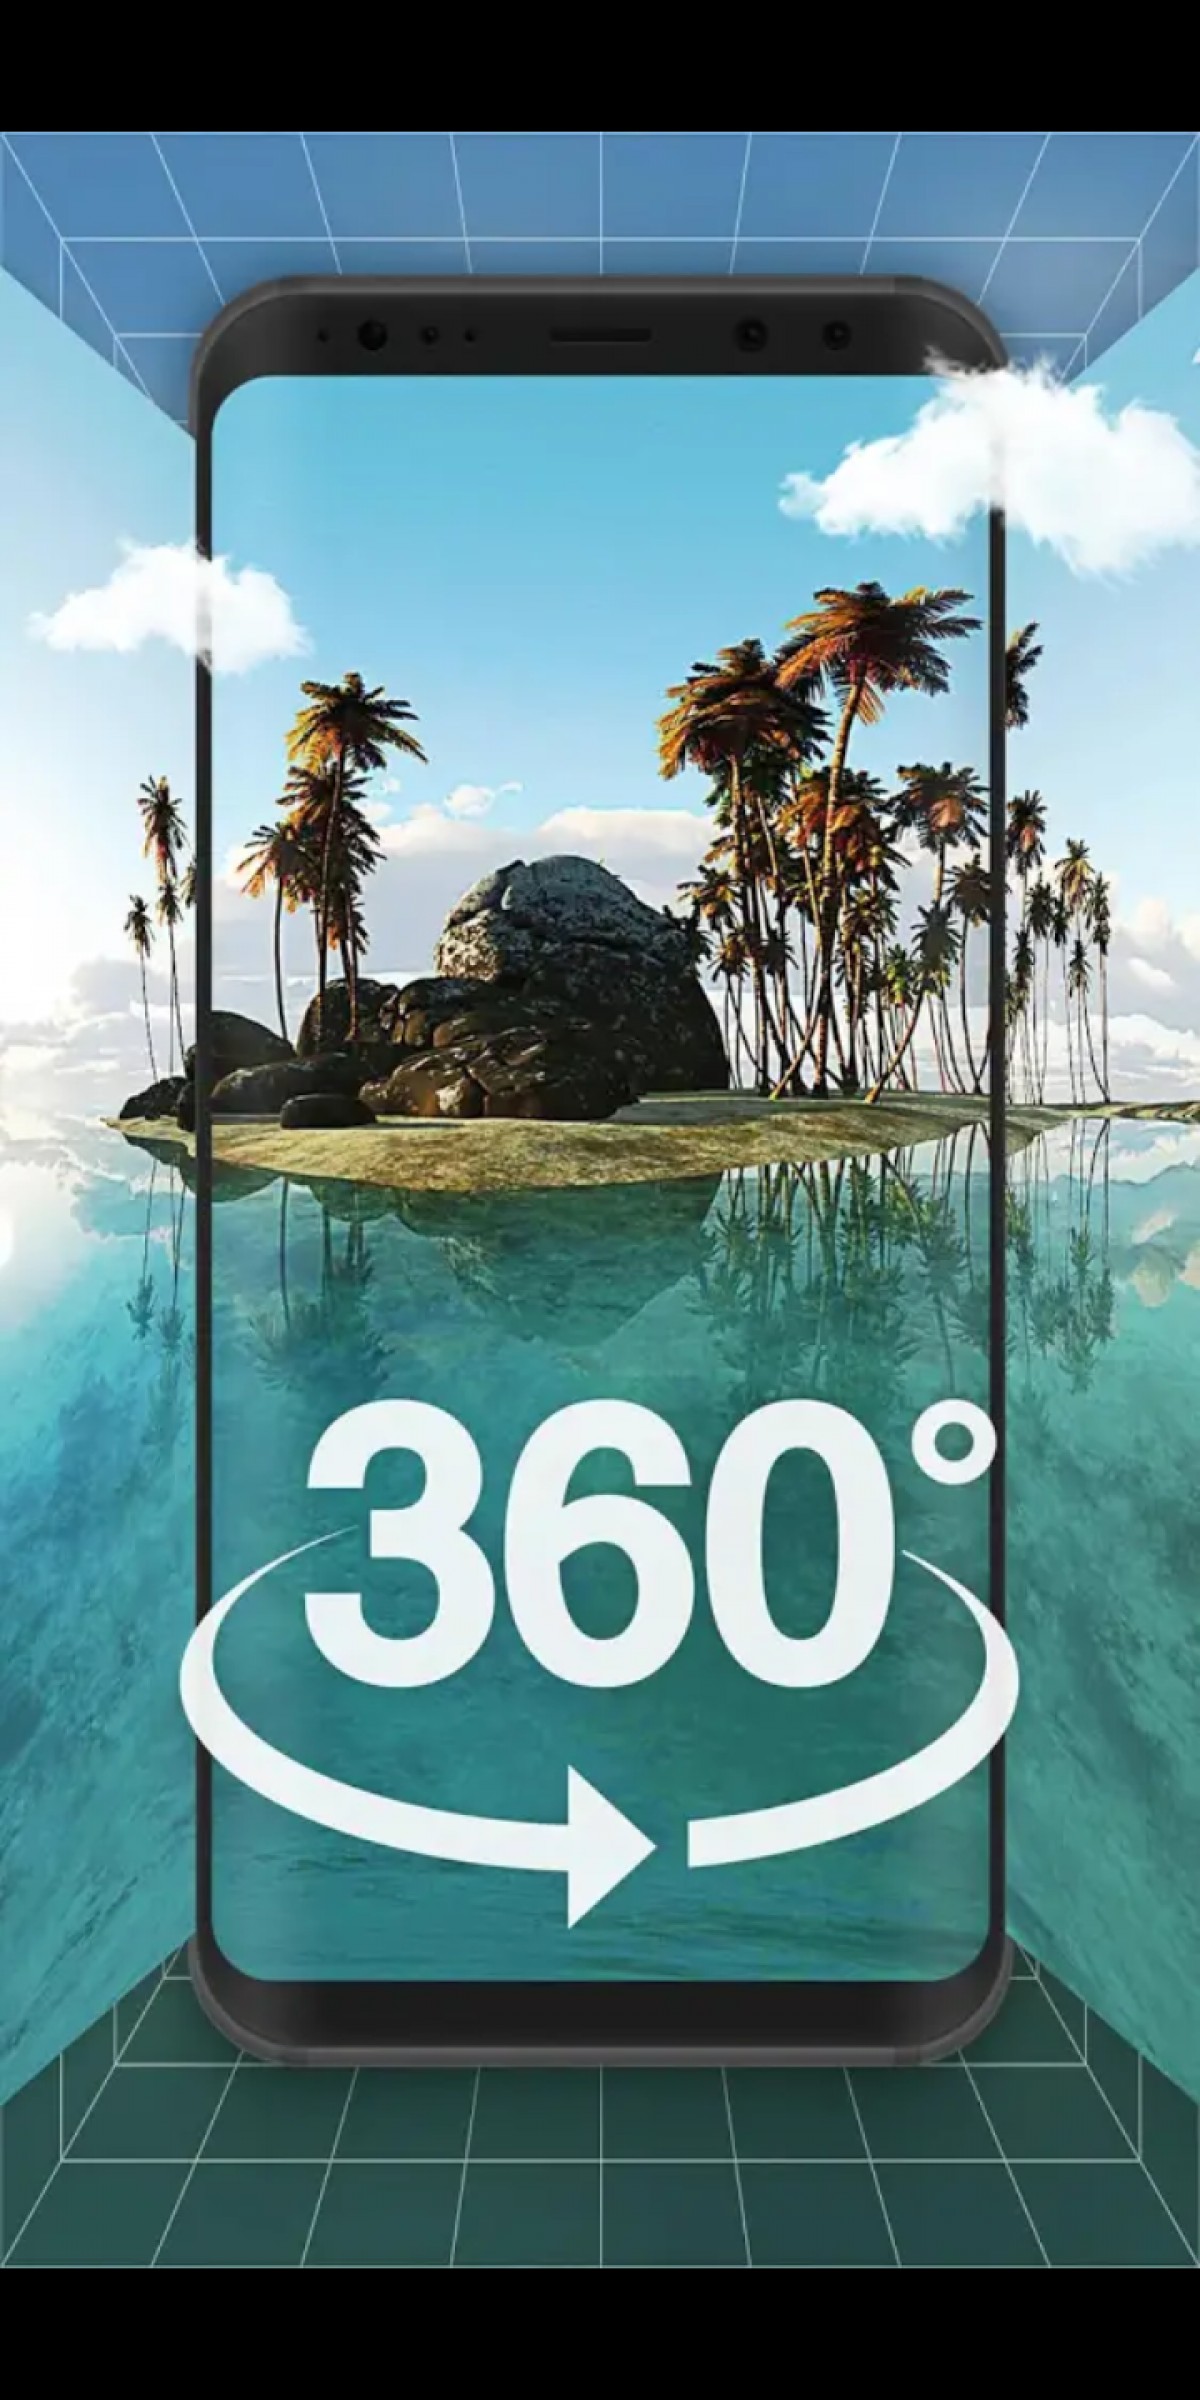 360도 벽지 무료 다운로드,휴가,야자수,대양,여름,기호